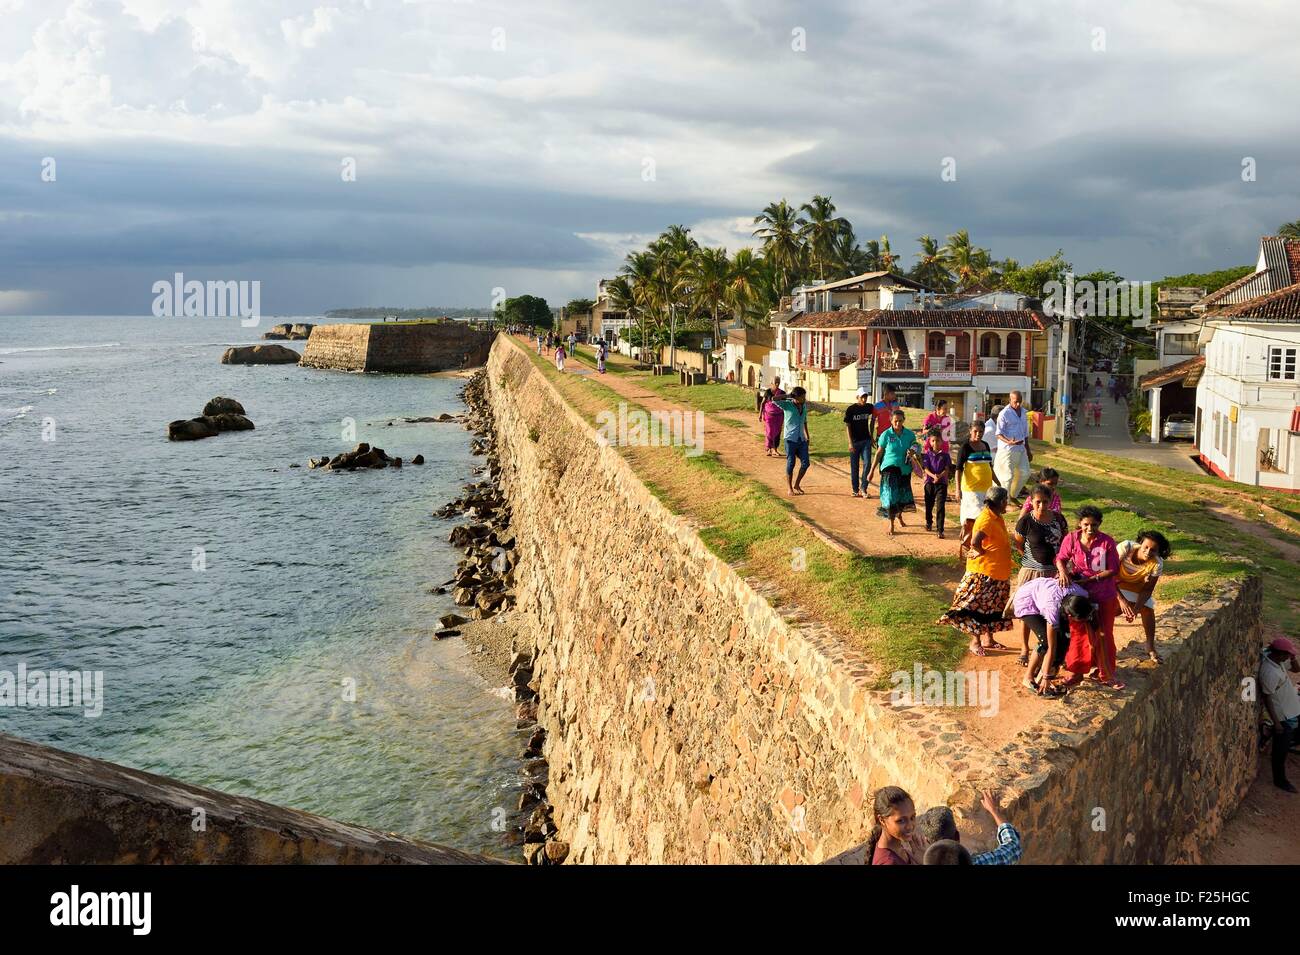 Sri Lanka, della Provincia Meridionale, Galle Fort, classificato come patrimonio mondiale dall' UNESCO, vecchie case coloniali dietro il mare delle pareti laterali della città fortificata Foto Stock